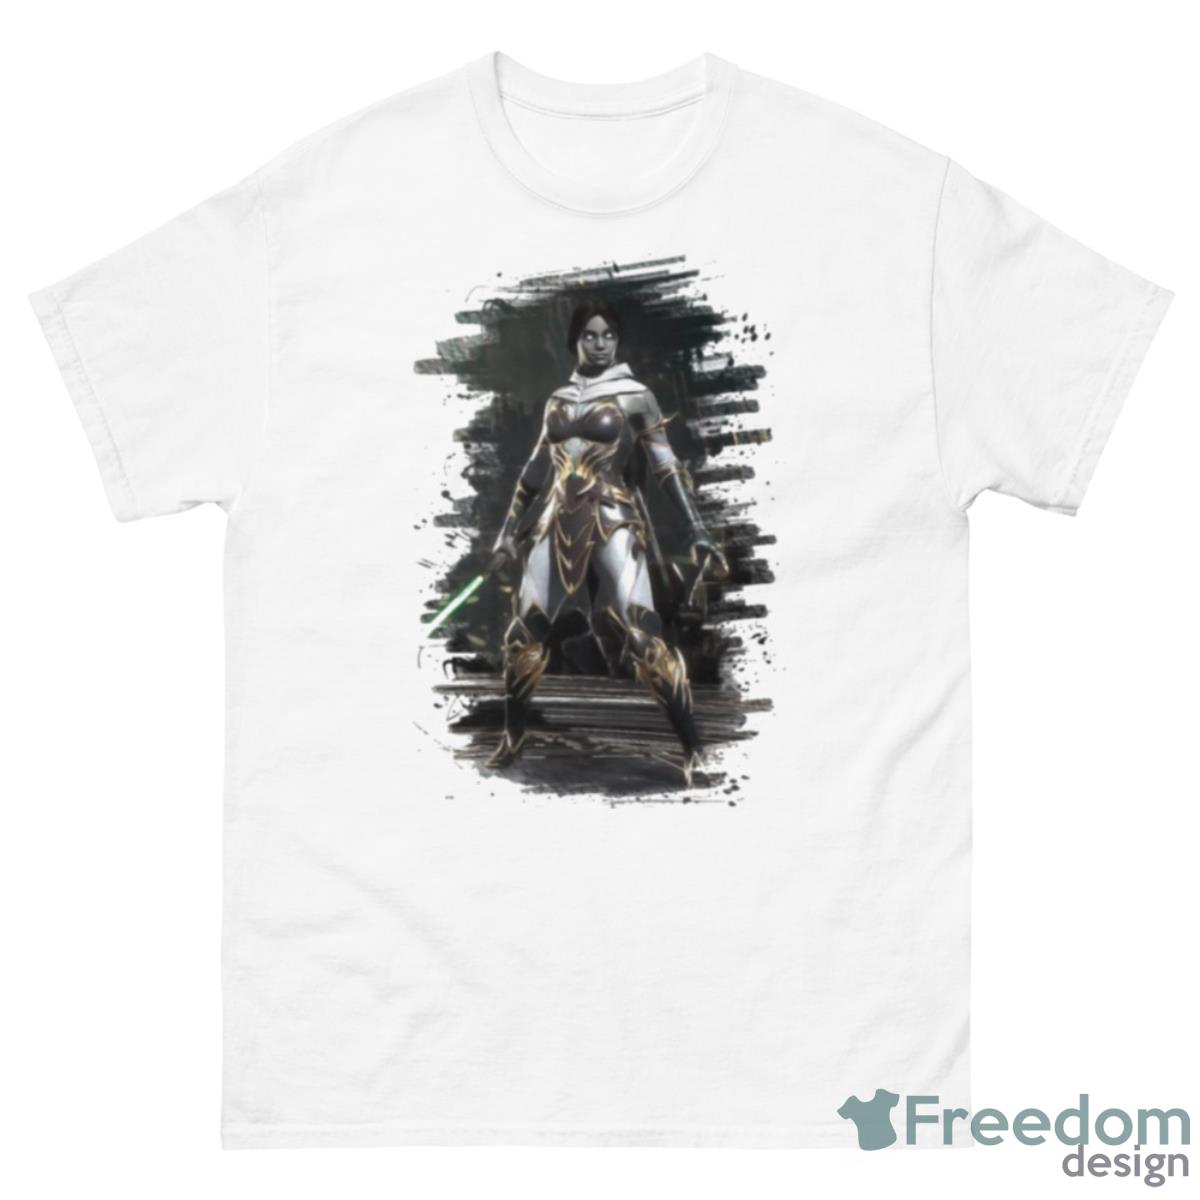 Jade From Mortal Kombat 11 Art Shirt - 500 Men’s Classic Tee Gildan